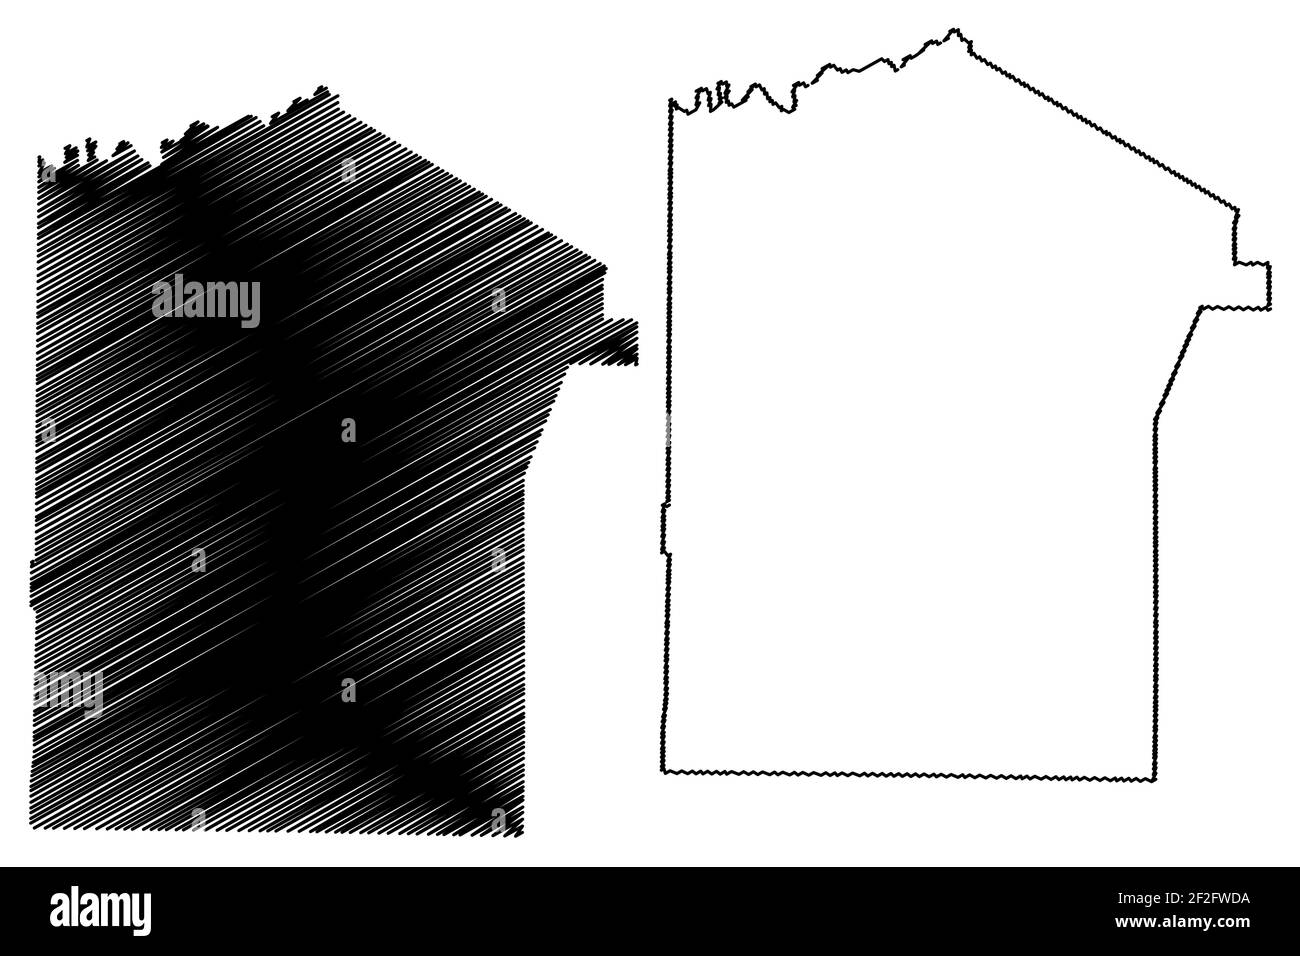 Jefferson County, Commonwealth of Pennsylvania (Stati Uniti, Stati Uniti d'America, Stati Uniti, Stati Uniti, Stati Uniti) mappa vettoriale illustrazione, scrimble sketch Jeffers Illustrazione Vettoriale